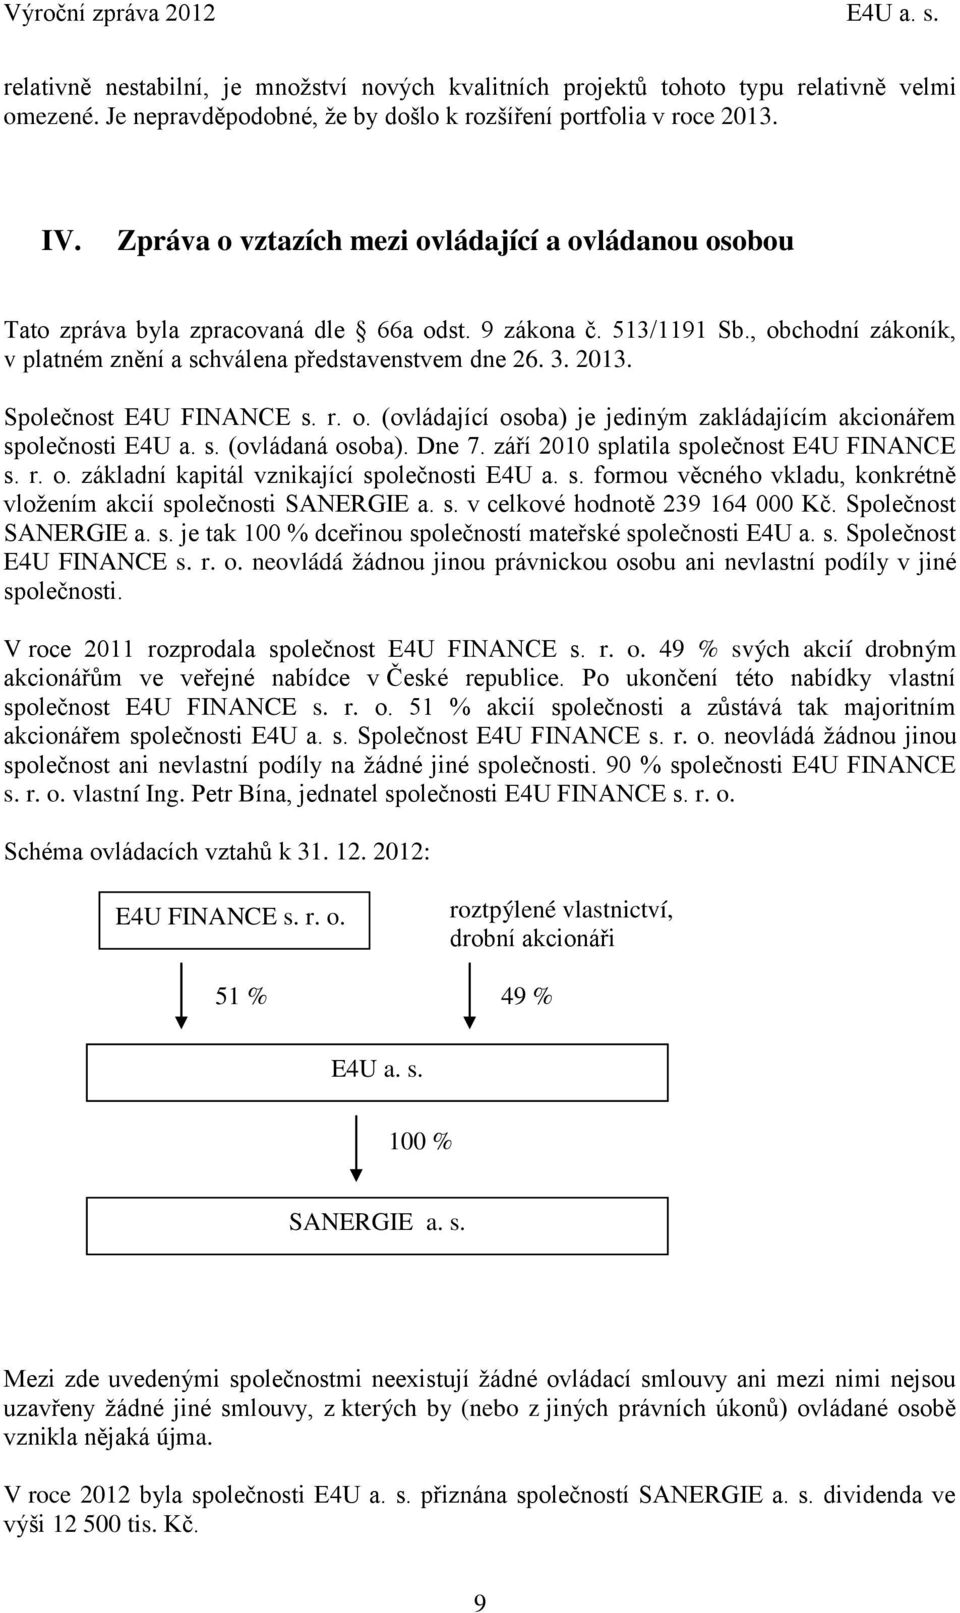 Společnost E4U FINANCE s. r. o. (ovládající osoba) je jediným zakládajícím akcionářem společnosti E4U a. s. (ovládaná osoba). Dne 7. září 2010 splatila společnost E4U FINANCE s. r. o. základní kapitál vznikající společnosti E4U a.